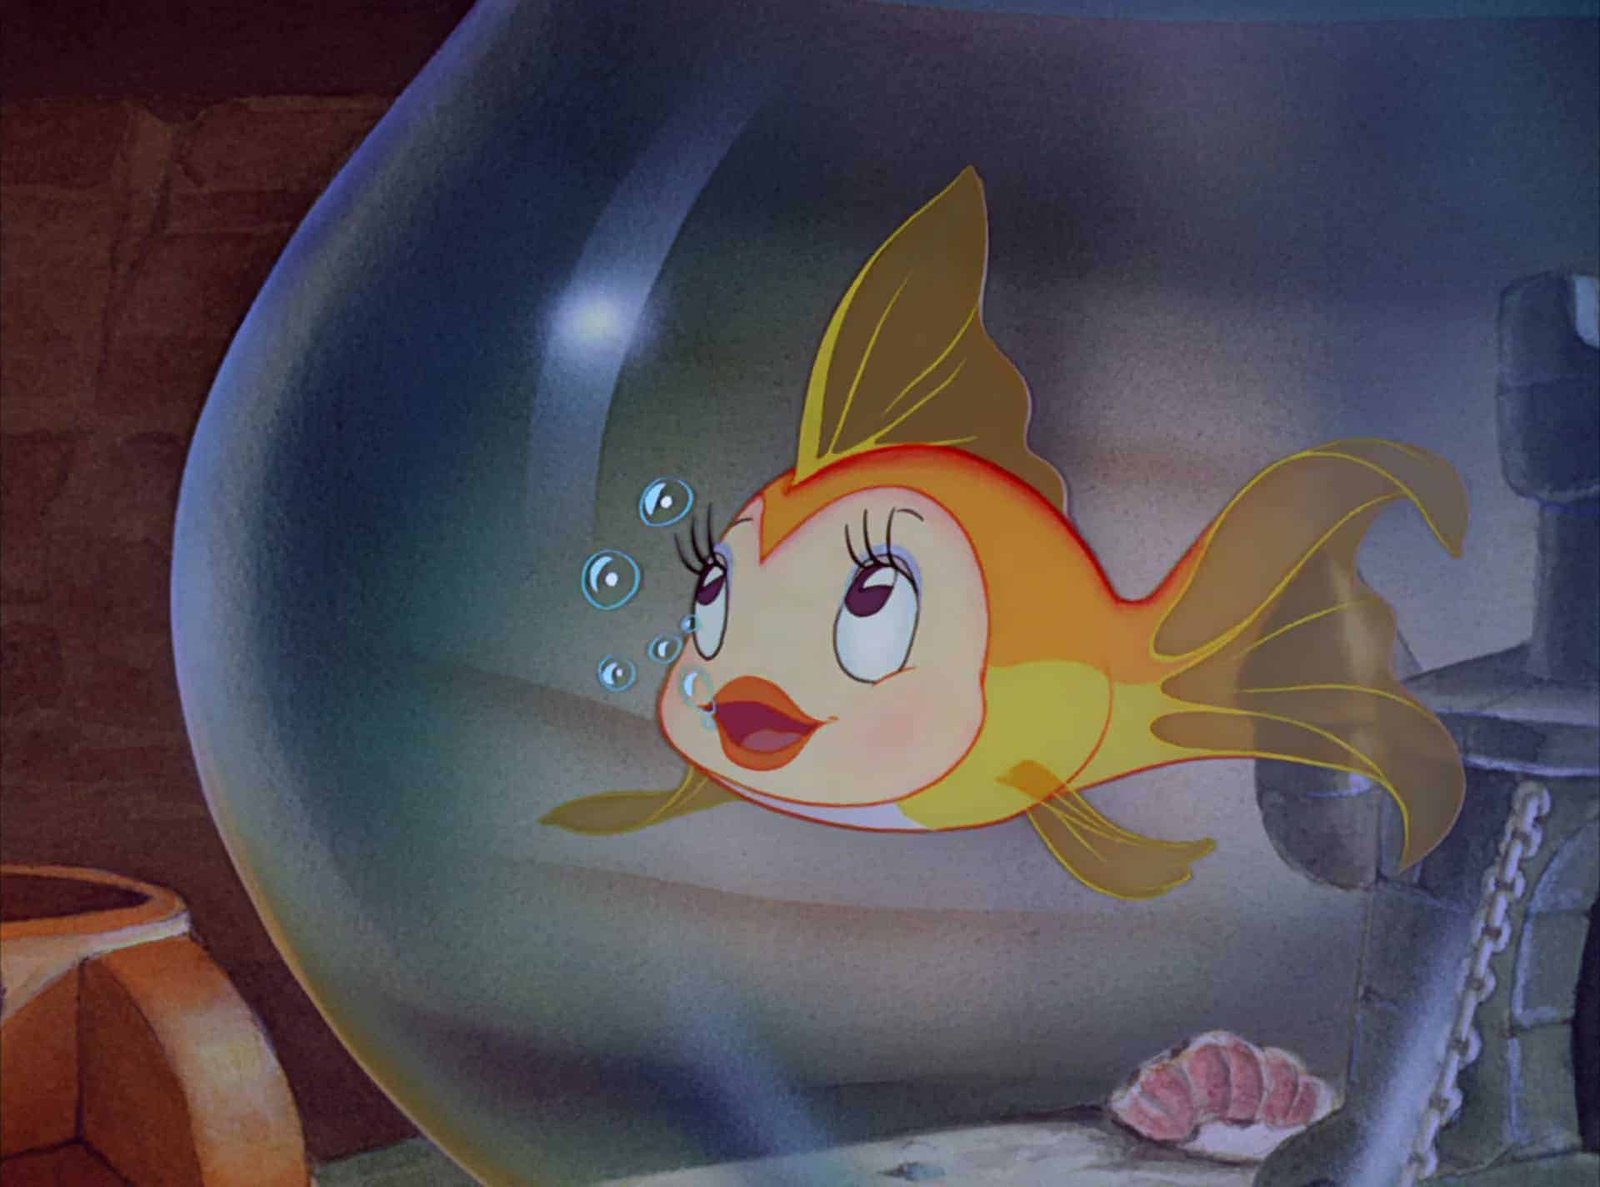 Une image de dessin animé d'un poisson Disney jaune et orange en détresse avec de grands yeux et de grandes lèvres, pleurant dans un bol en verre rempli d'eau. L’arrière-plan représente une scène intérieure sombre et sous-marine.